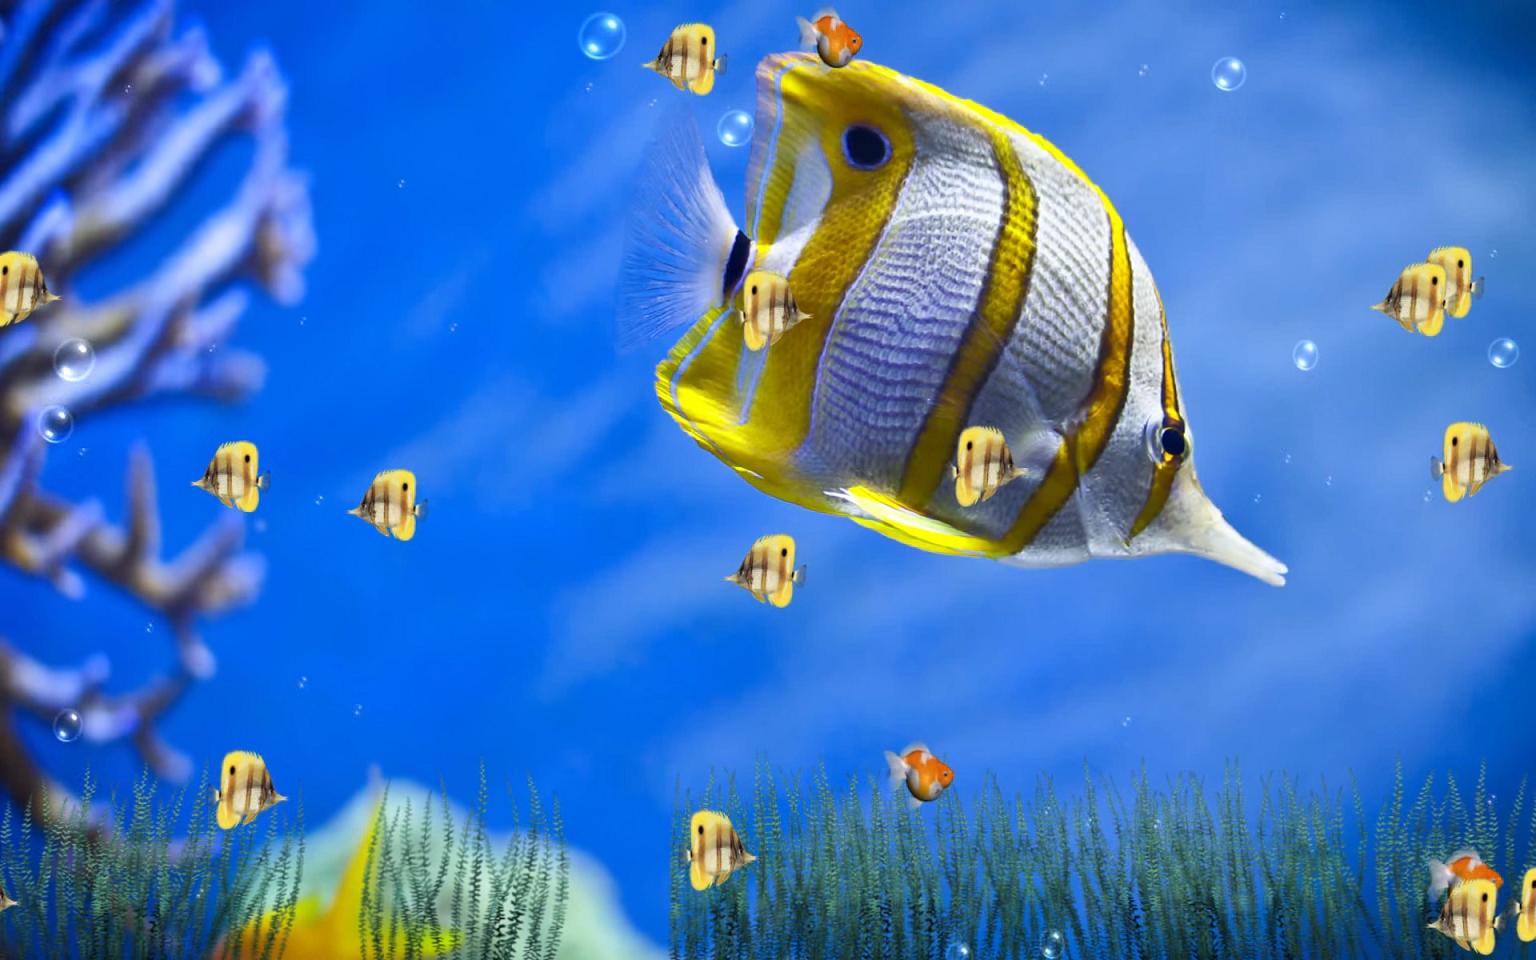 Now Marine Life Aquarium Animated Wallpaper Ed